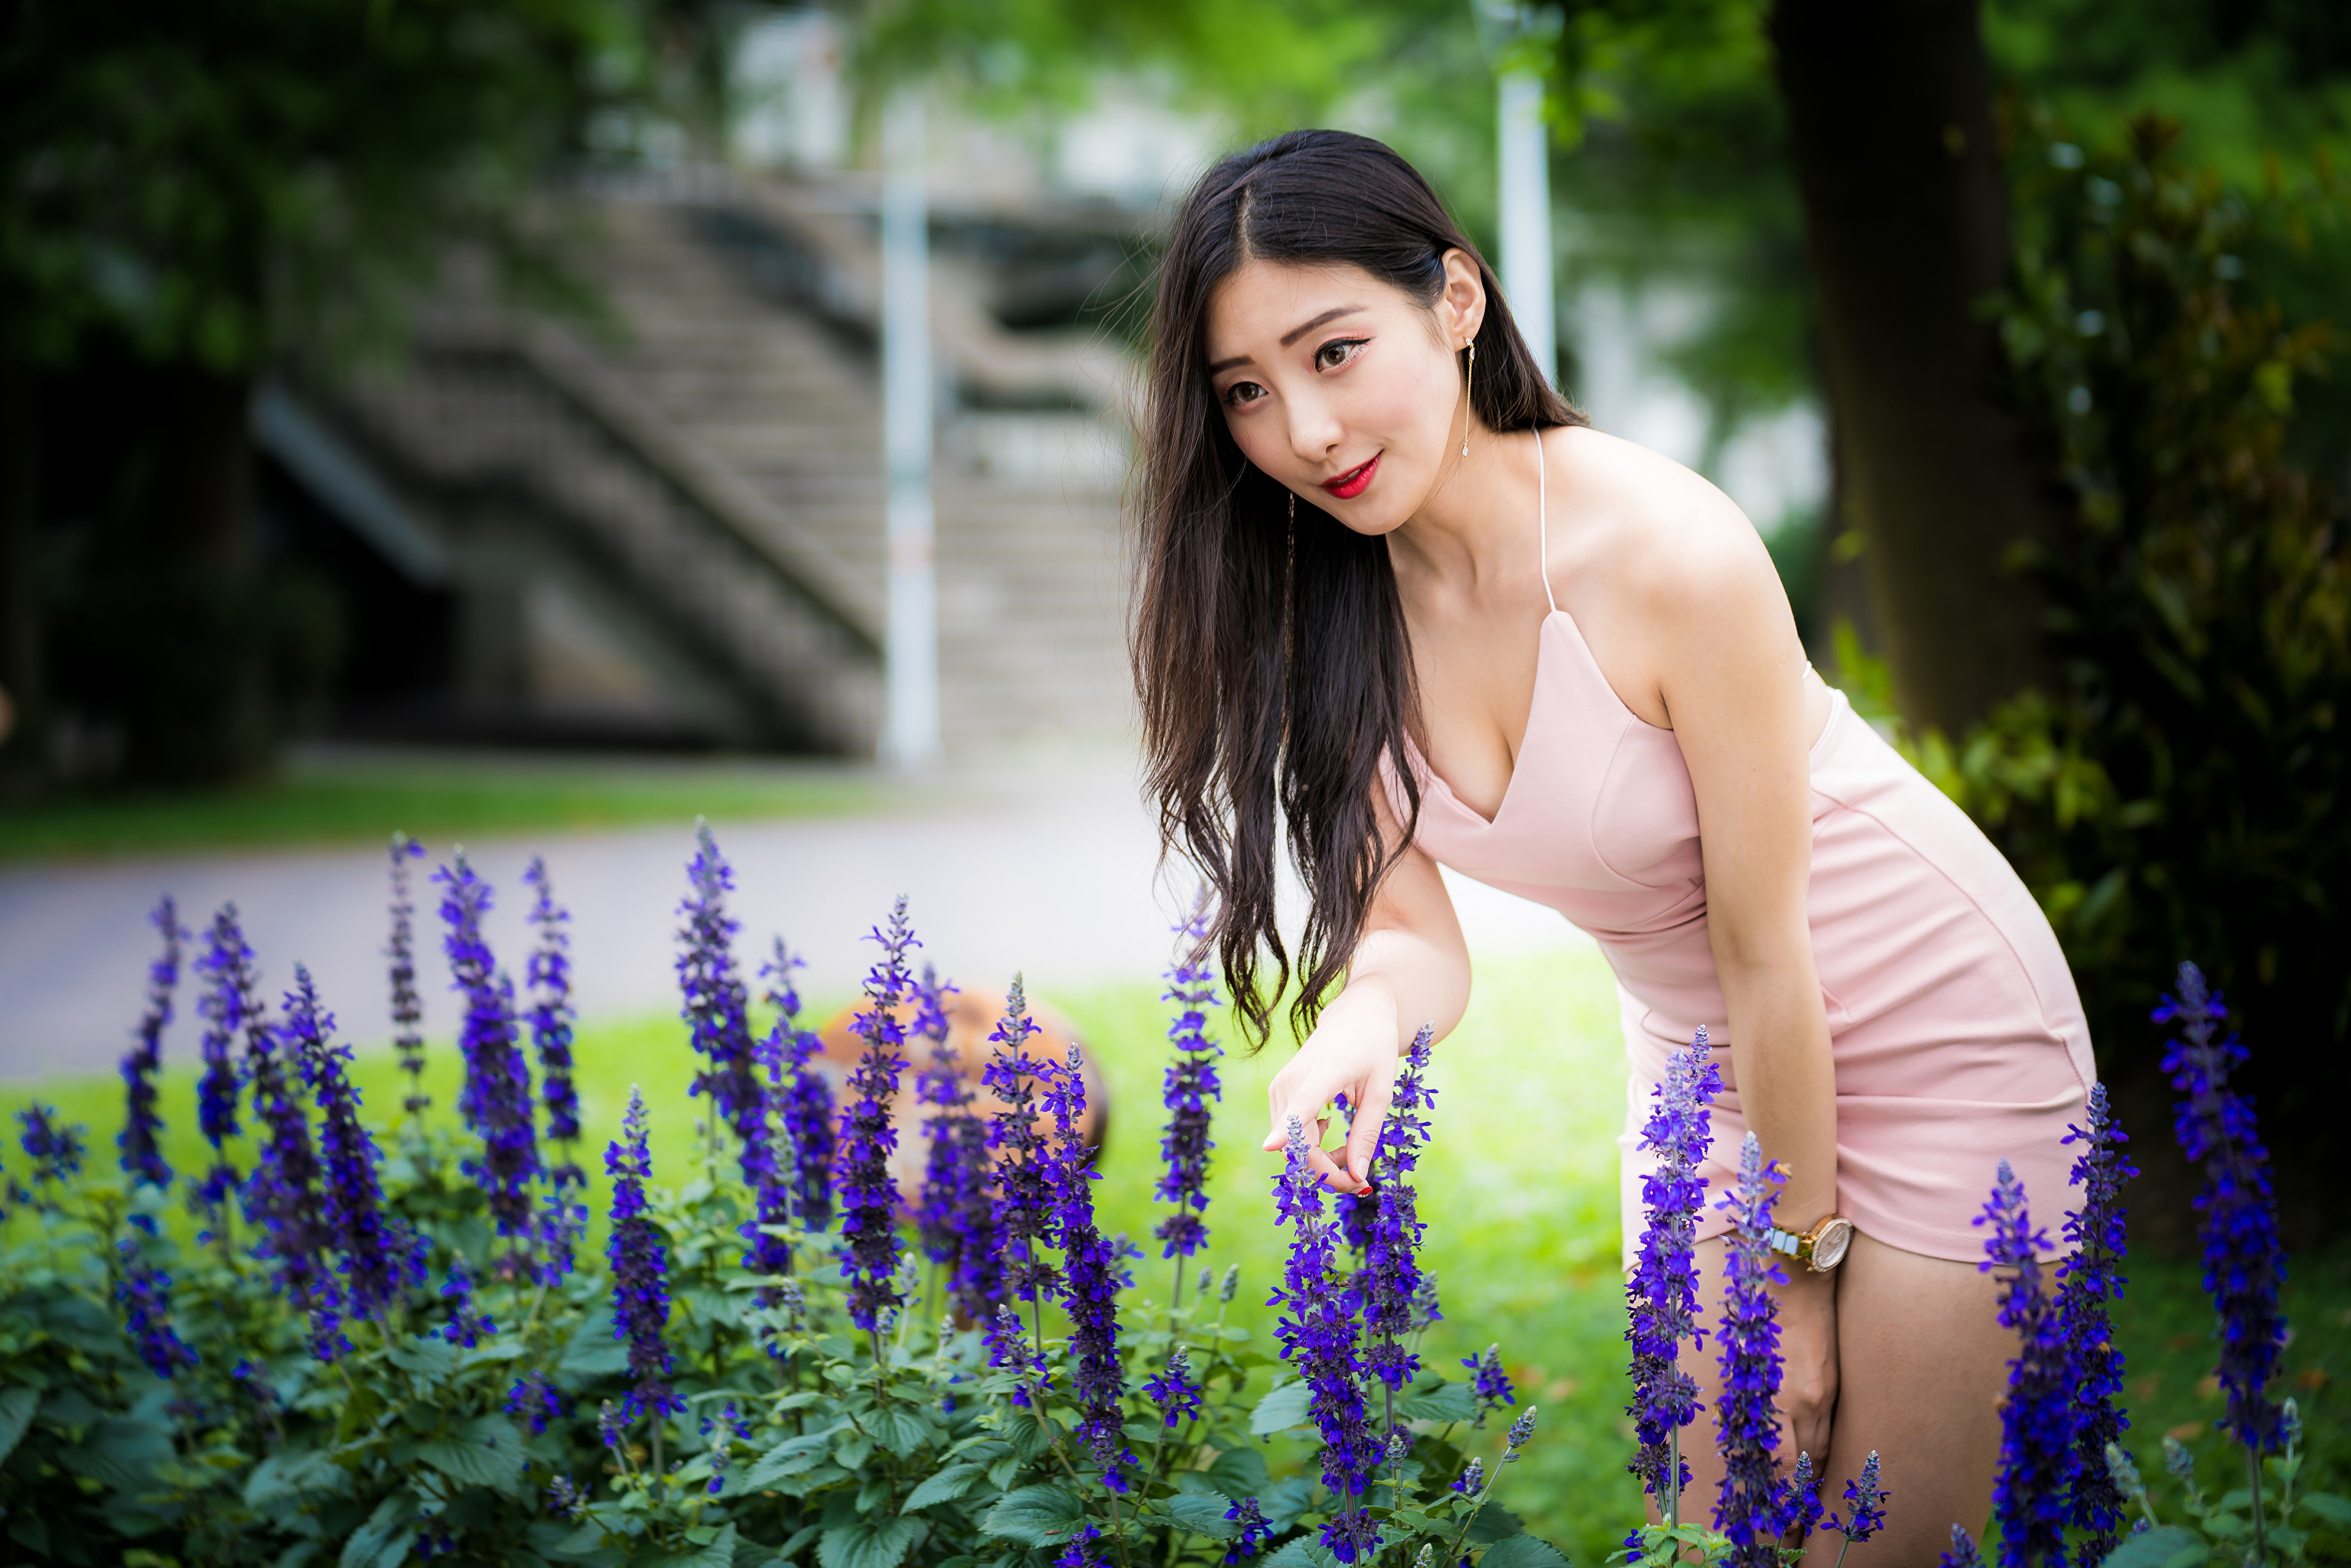 Asian Model Women Long Hair Brunette Flowers Depth Of Field Stairs Wristwatch Earring Red Lipstick 3840x2561